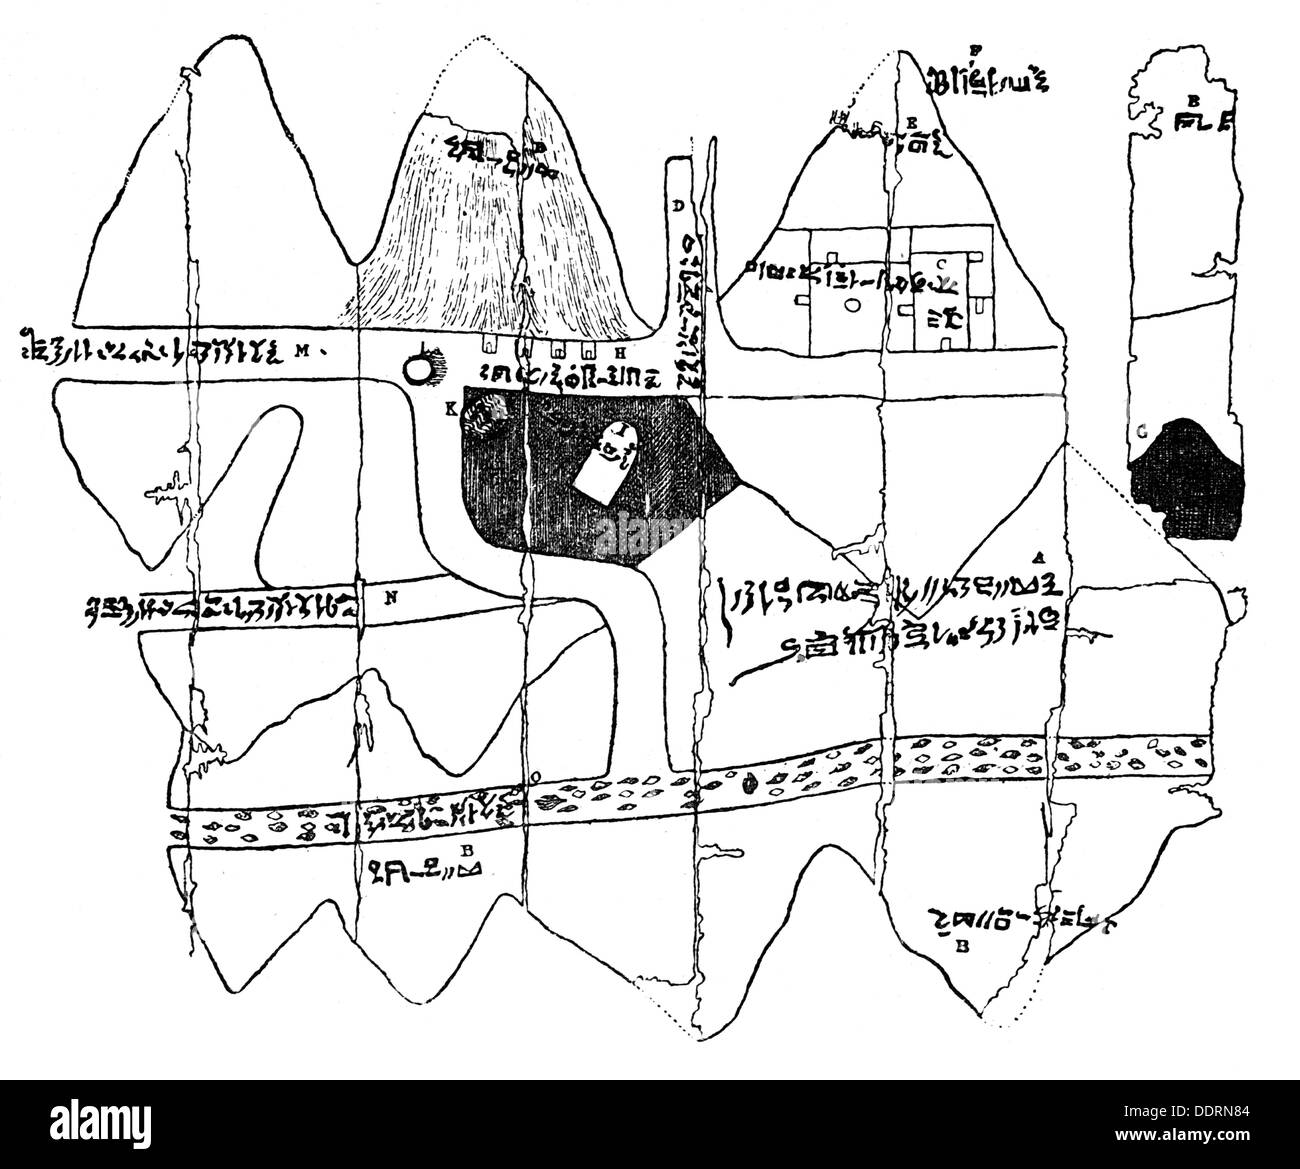 Cartografia, mappa, mappa egiziana sul papiro, circa 1250 a.C., incisione in legno, 'Ägypten und ägyptisches Leben im Altertum' di Adolf Erman, Tübingen, 1877, diritti-aggiuntivi-clearences-non disponibili Foto Stock